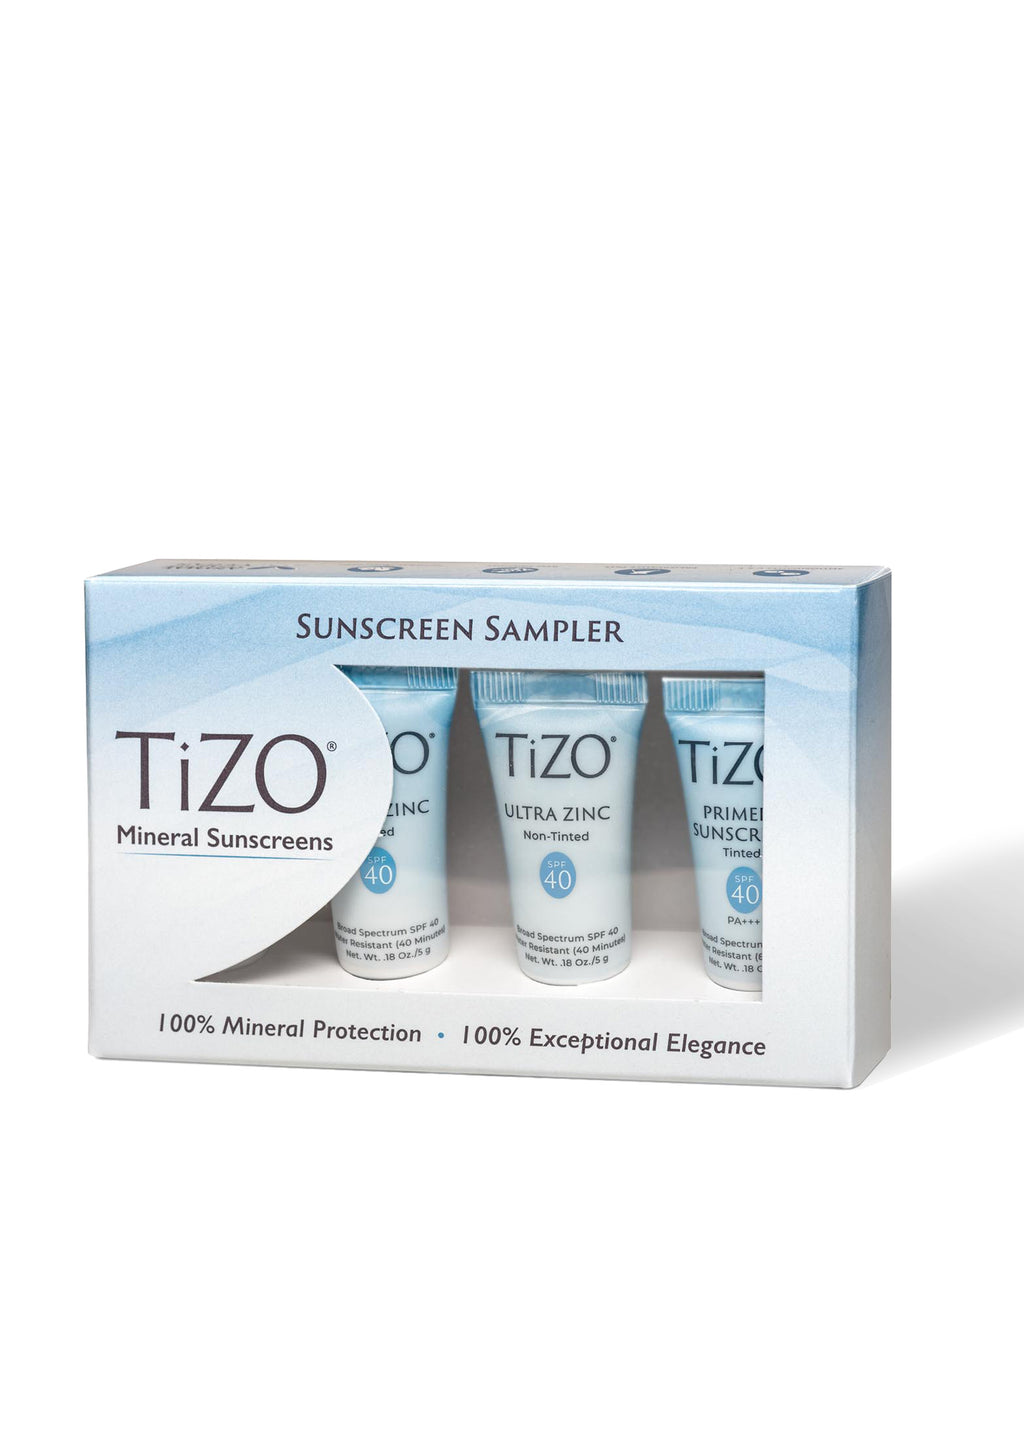 TiZO sampler kit